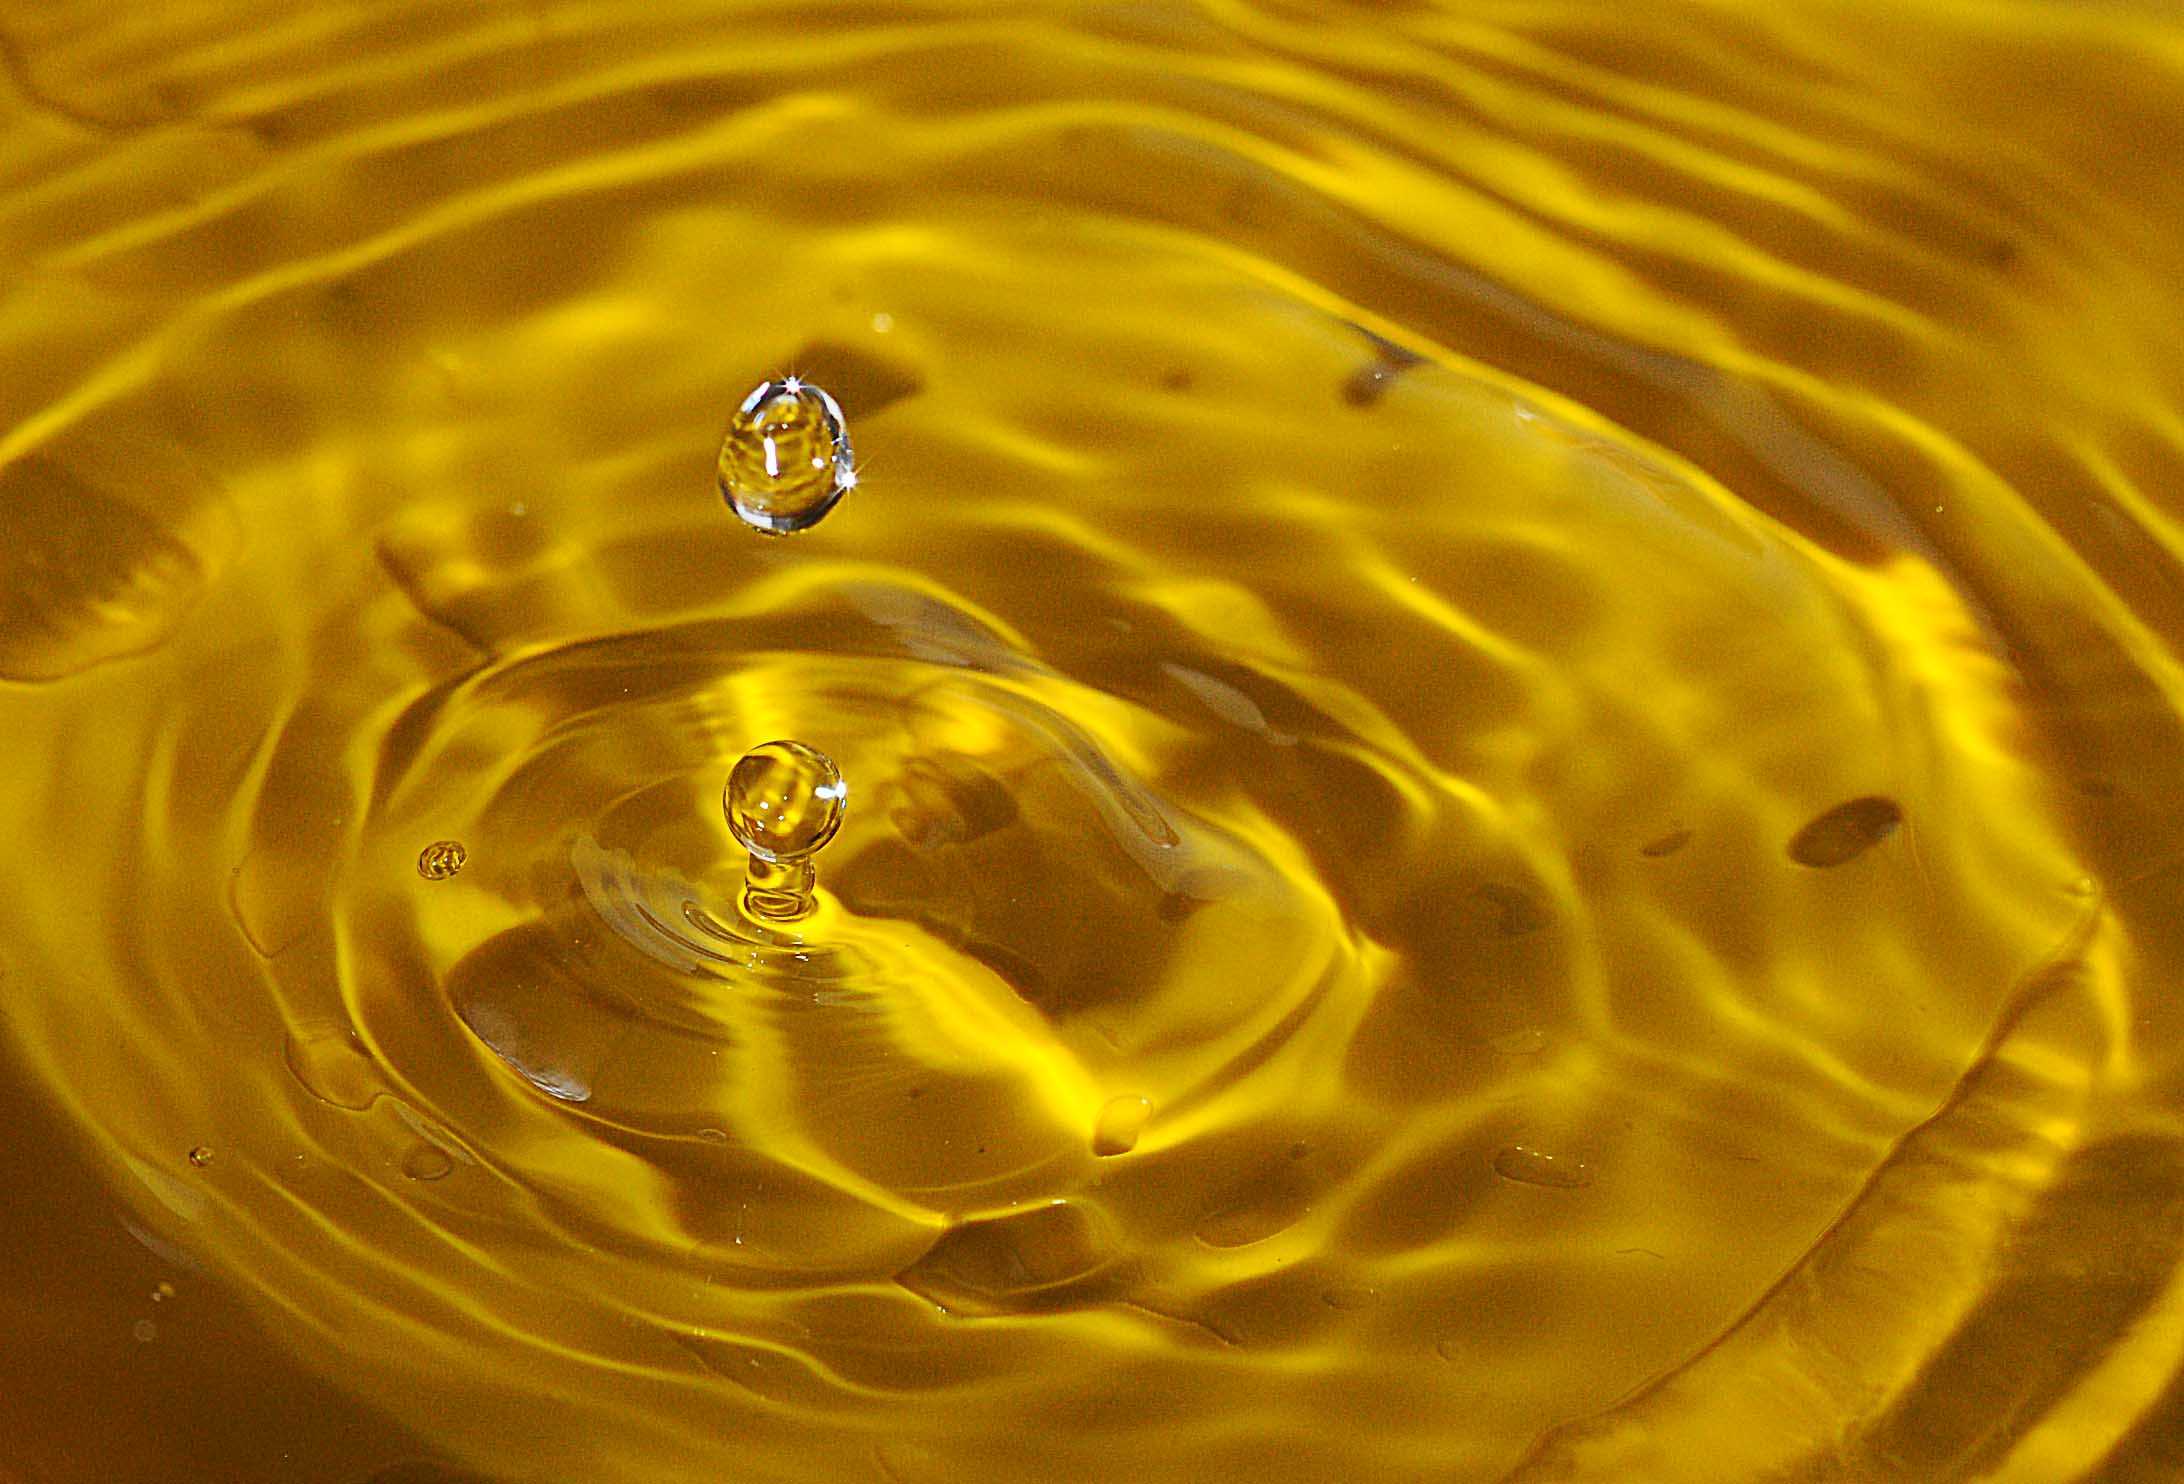 Реакция воды с золотом